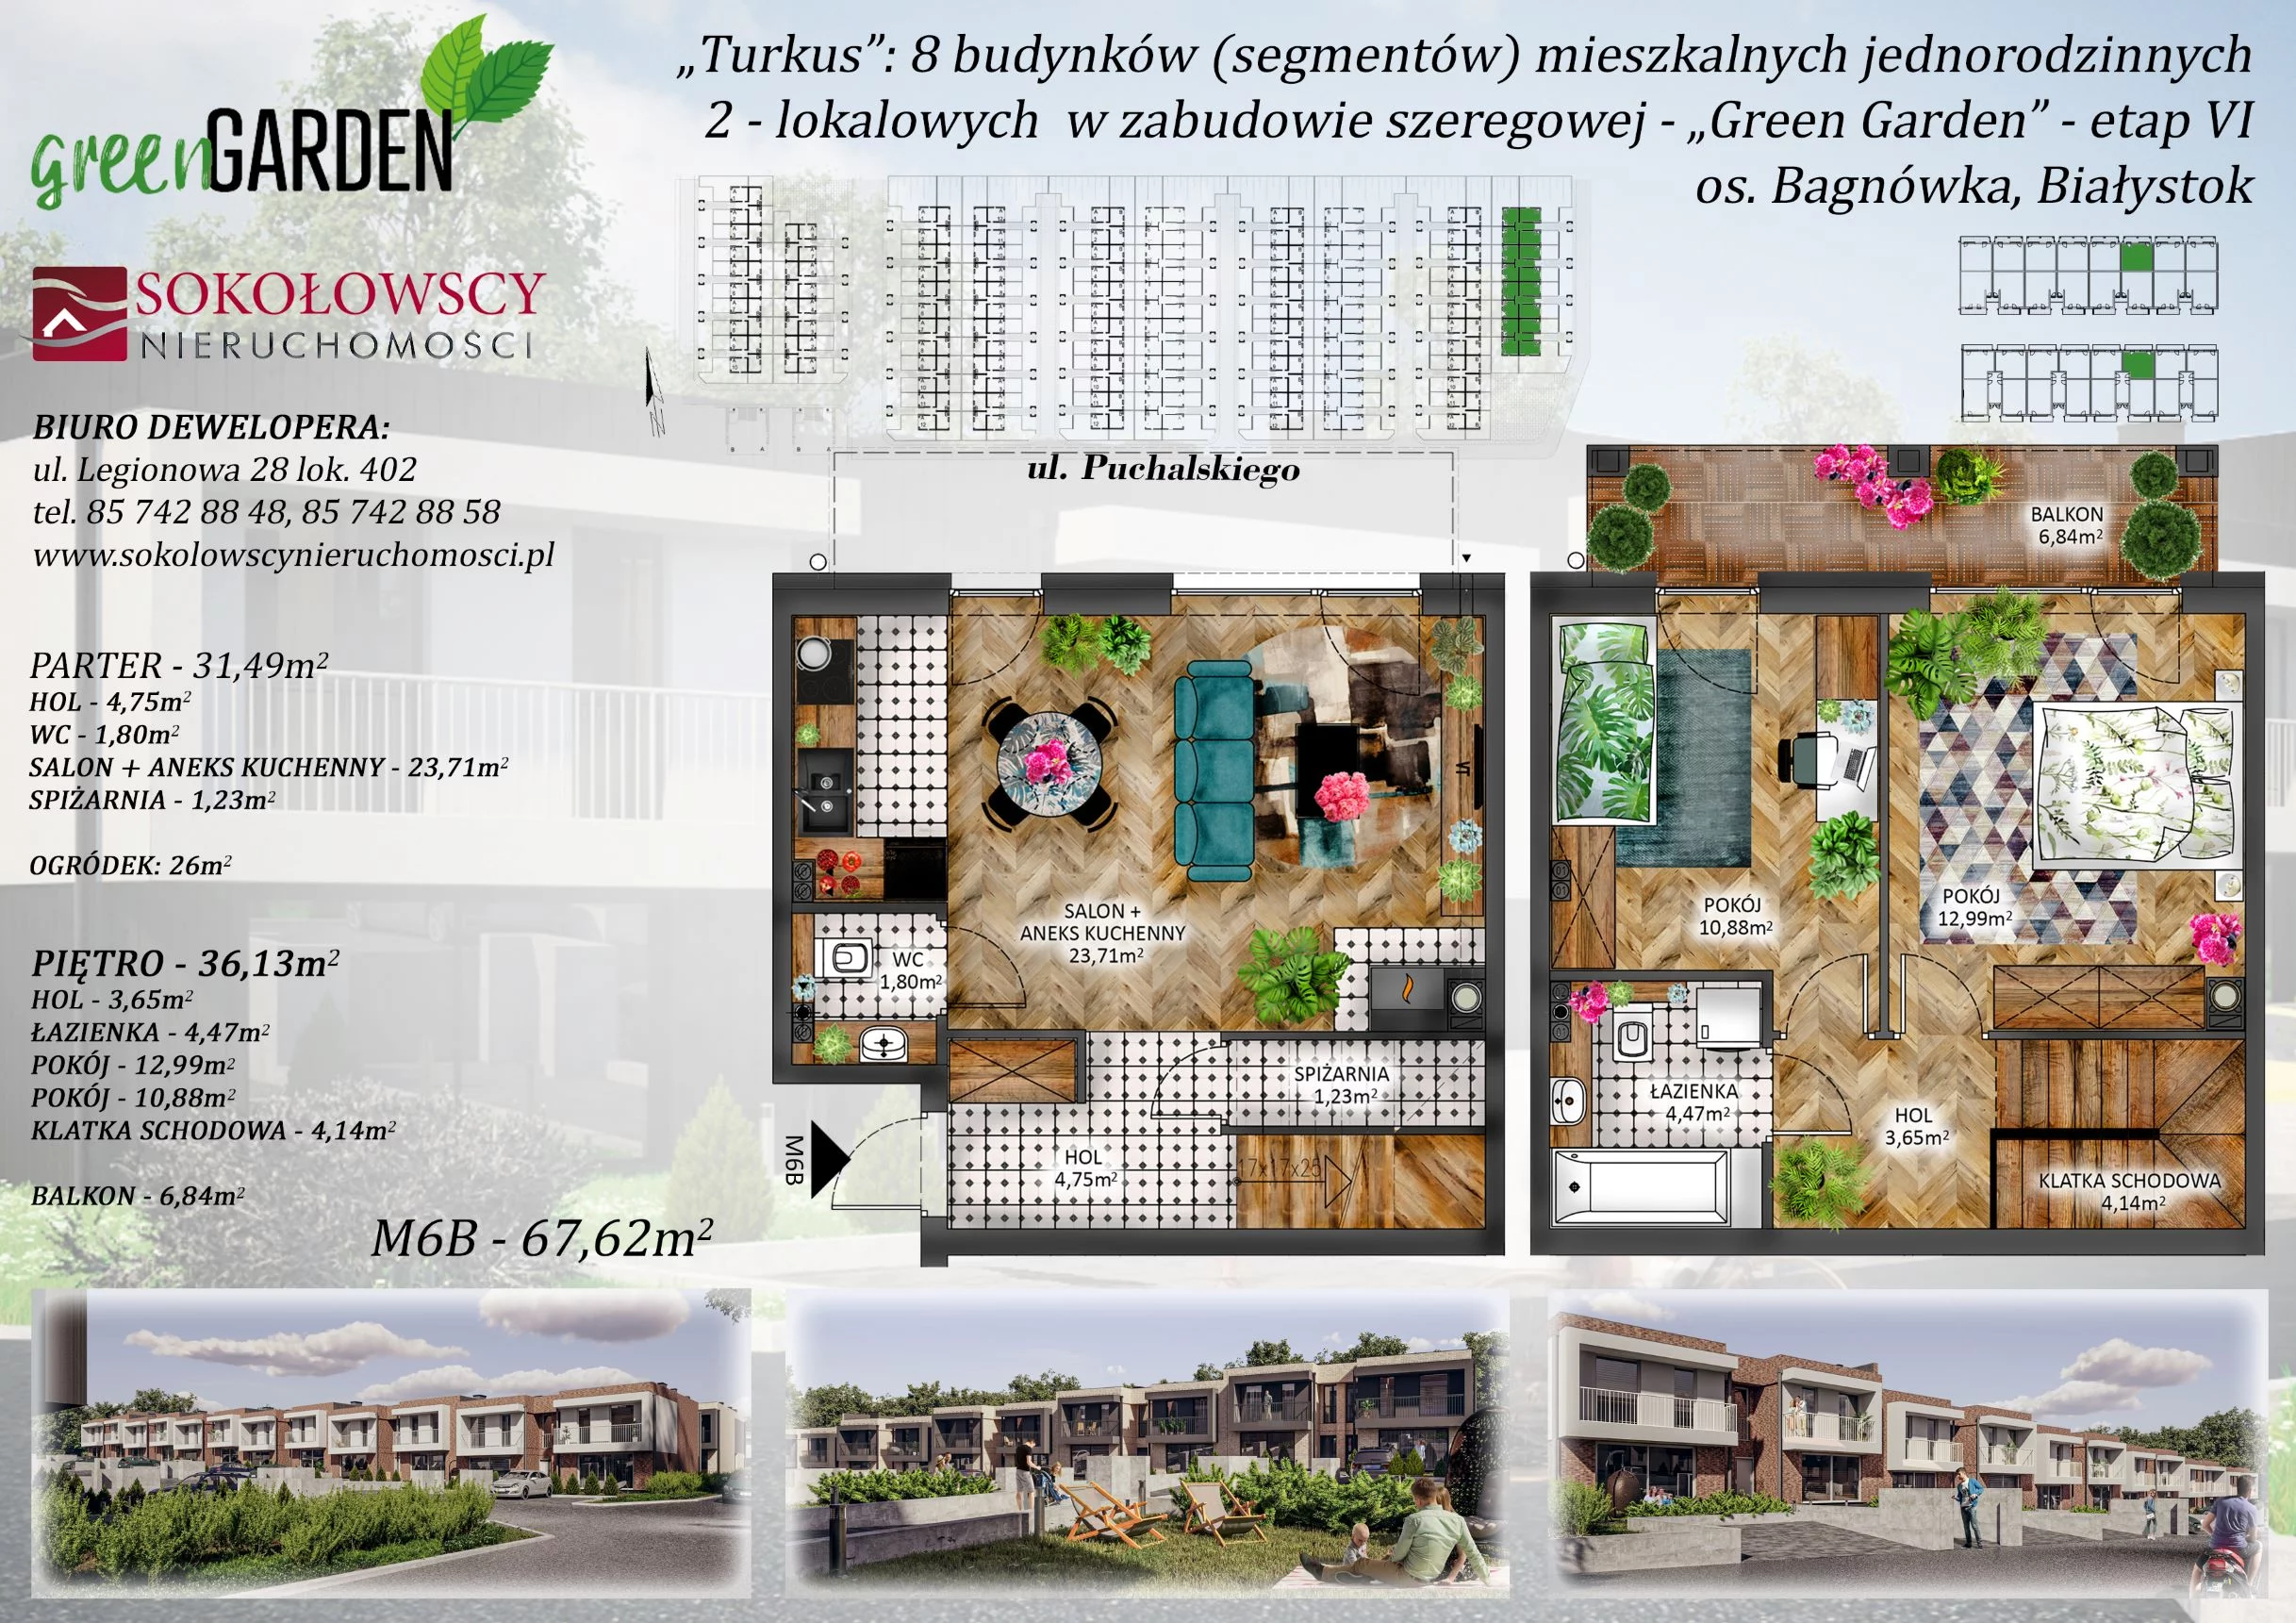 Mieszkanie 67,62 m², parter, oferta nr 6B, Green Garden etap 6, Białystok, Bagnówka, ul. Karola Puchalskiego